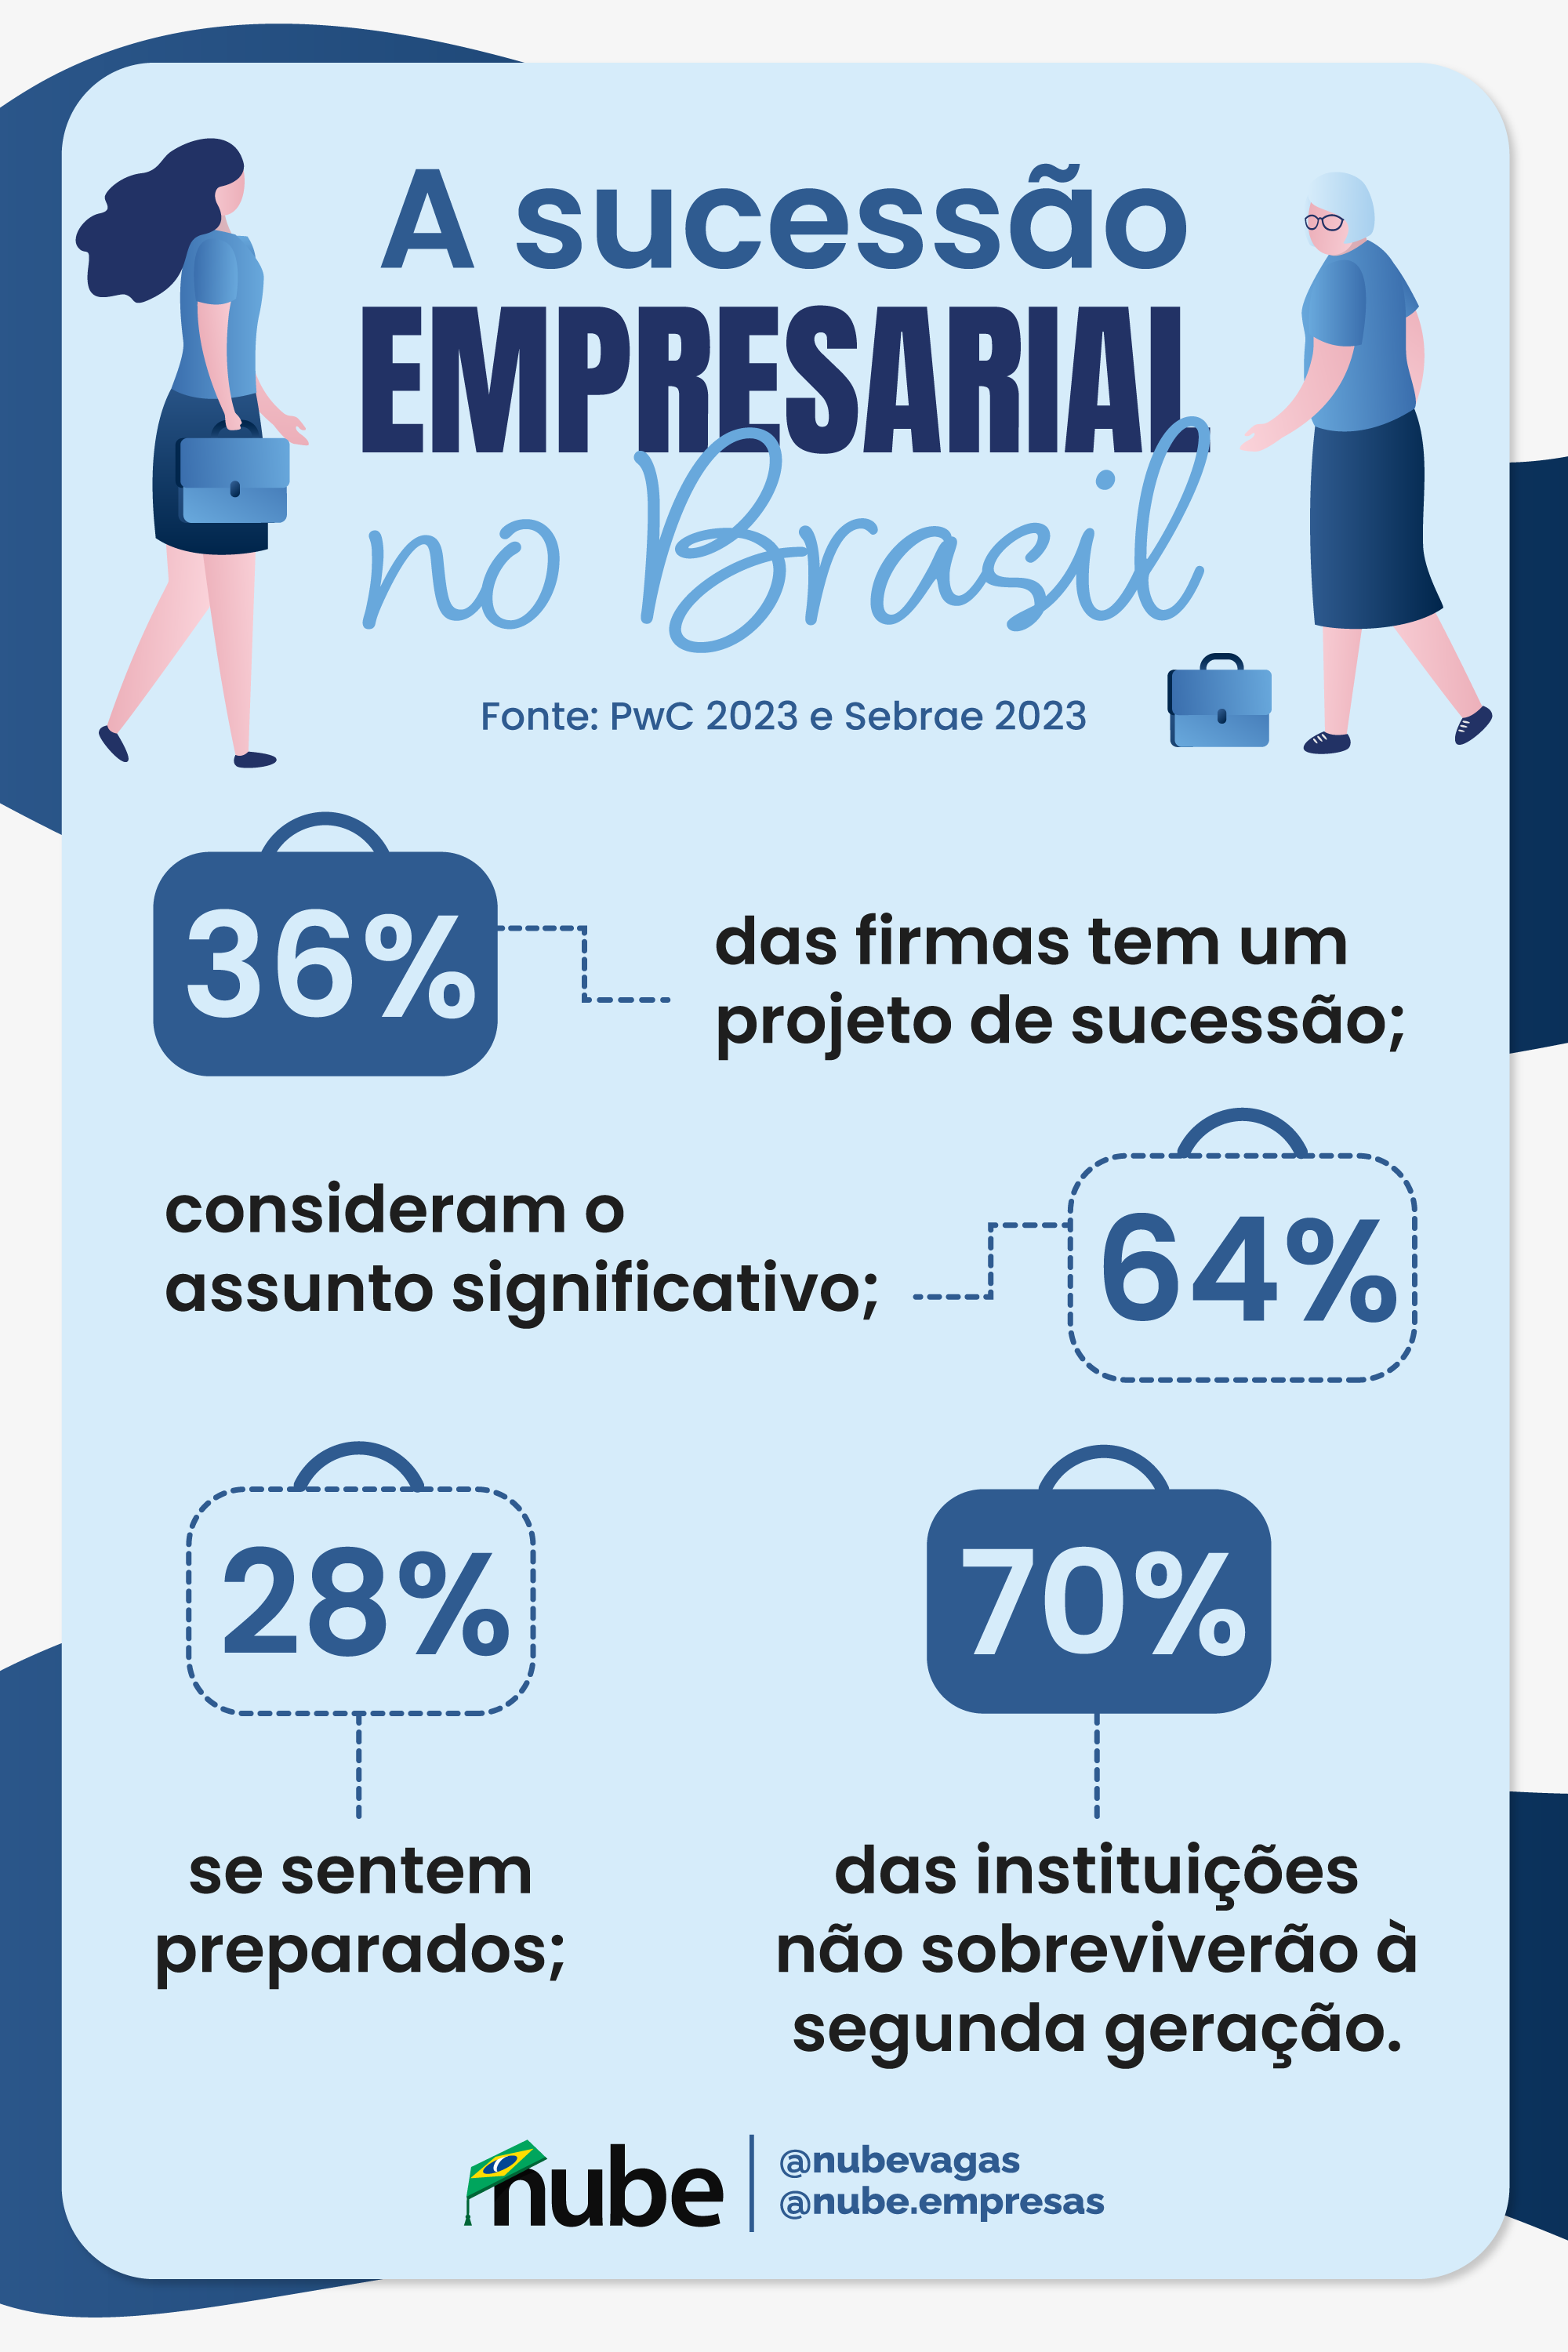 infográfico contendo dados sobre a sucessão empresarial no brasil